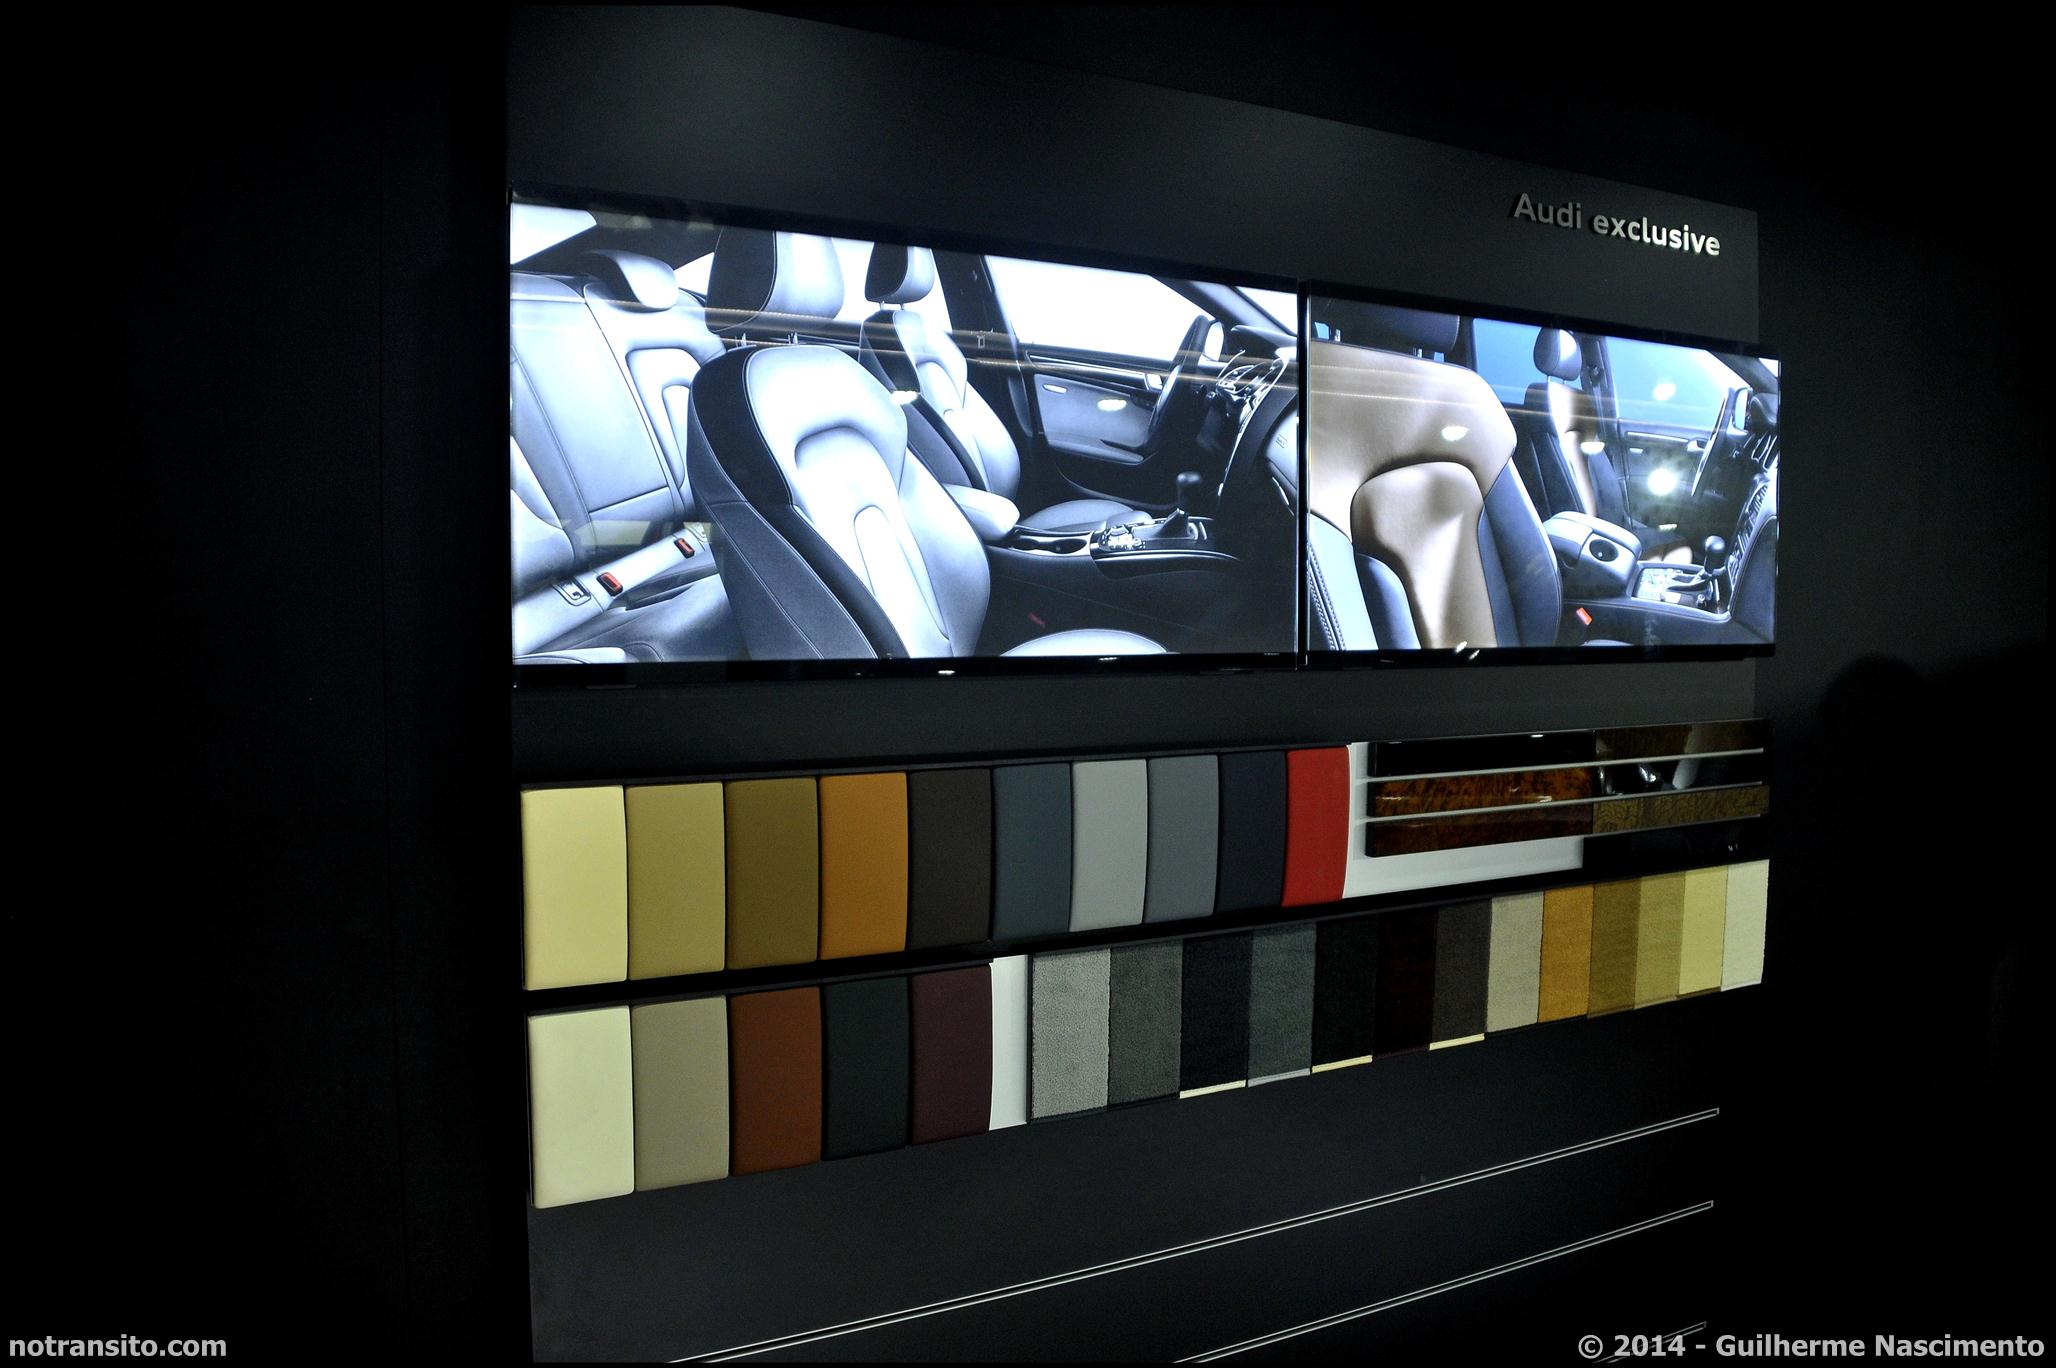 Audi A8 L W12 Exclusive Concept, Salão do Automóvel 2014, Audi Exclusive display